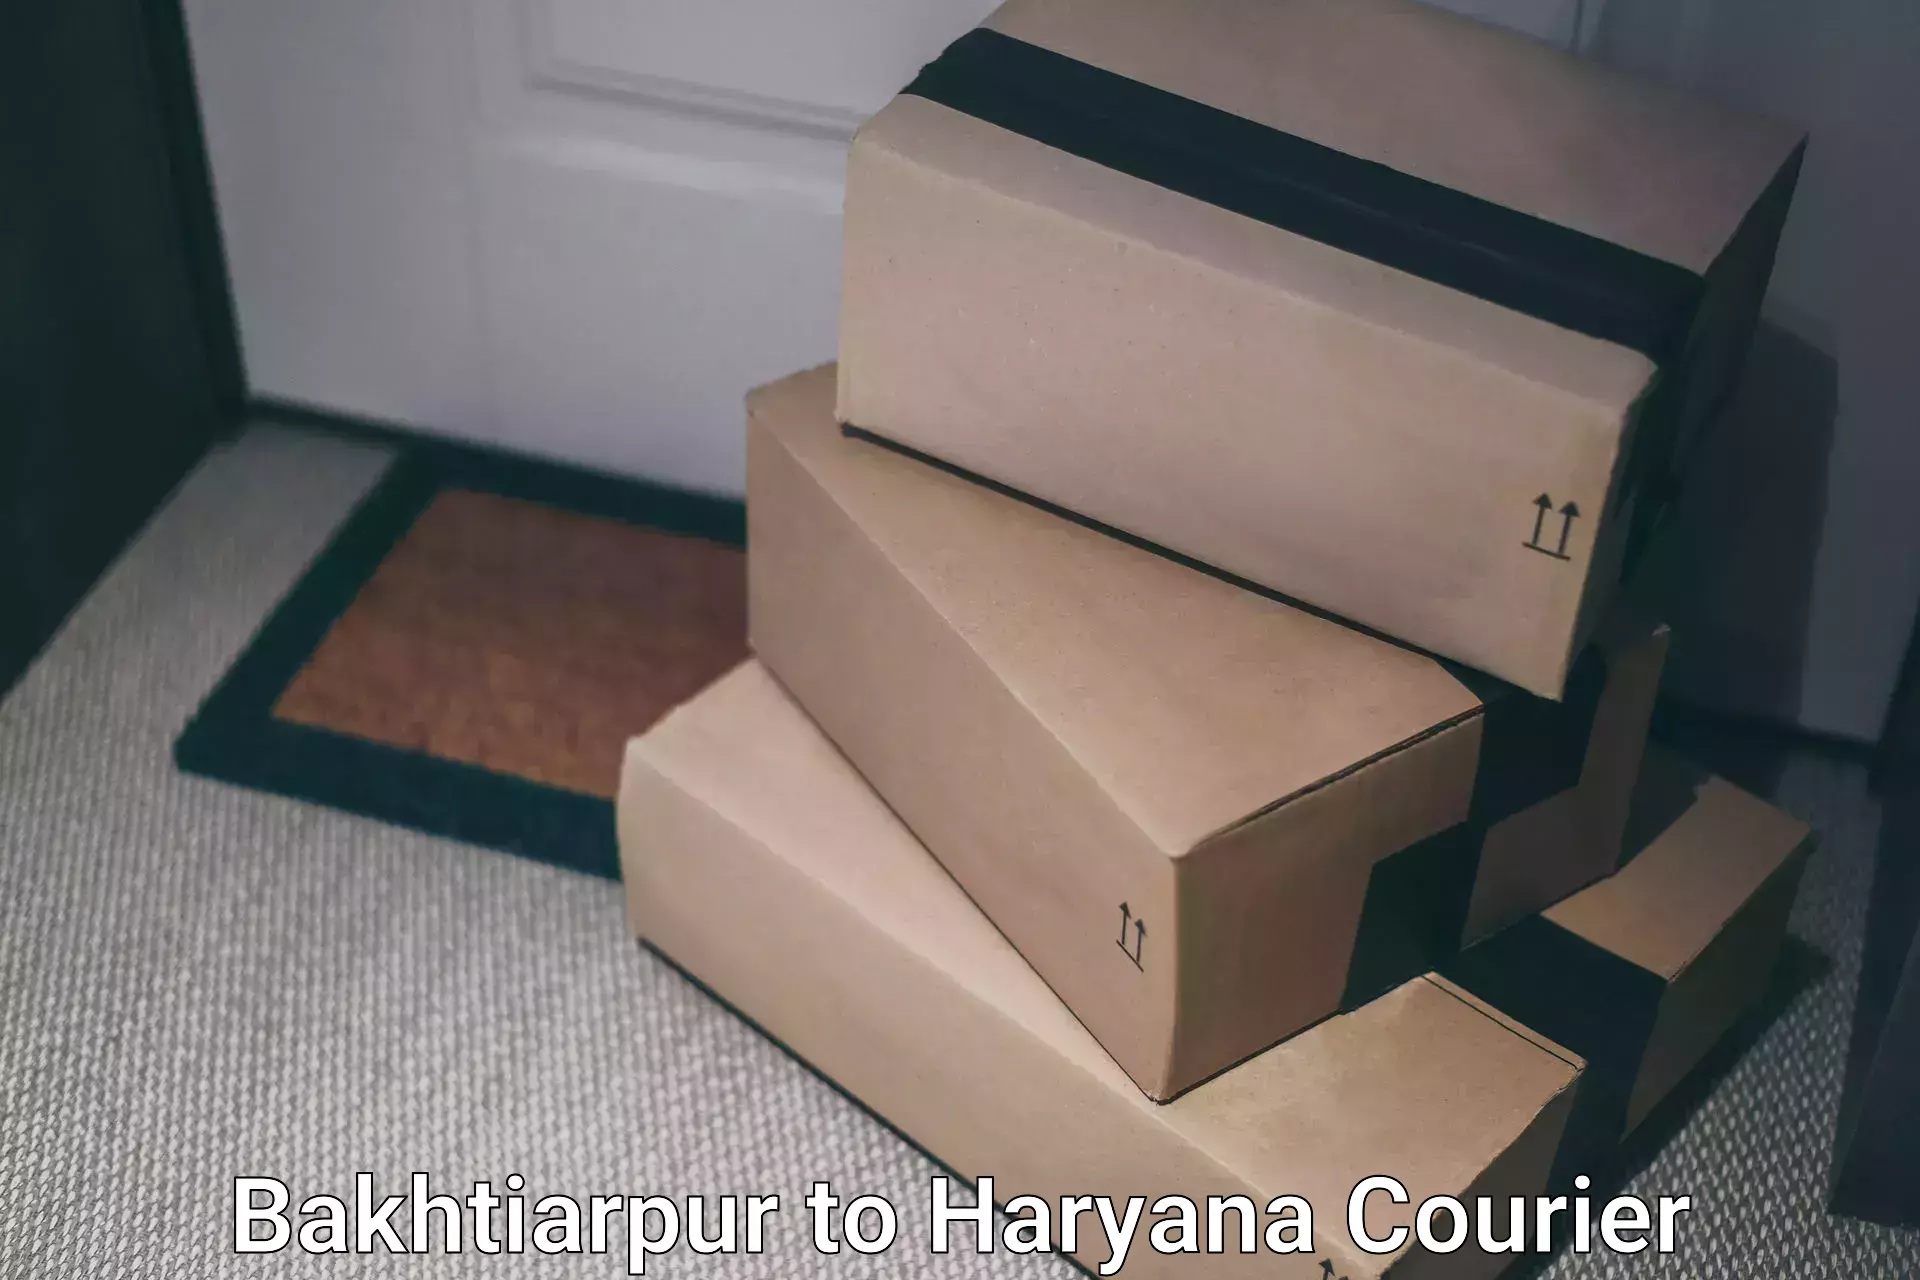 Cost-effective courier options Bakhtiarpur to Gurugram